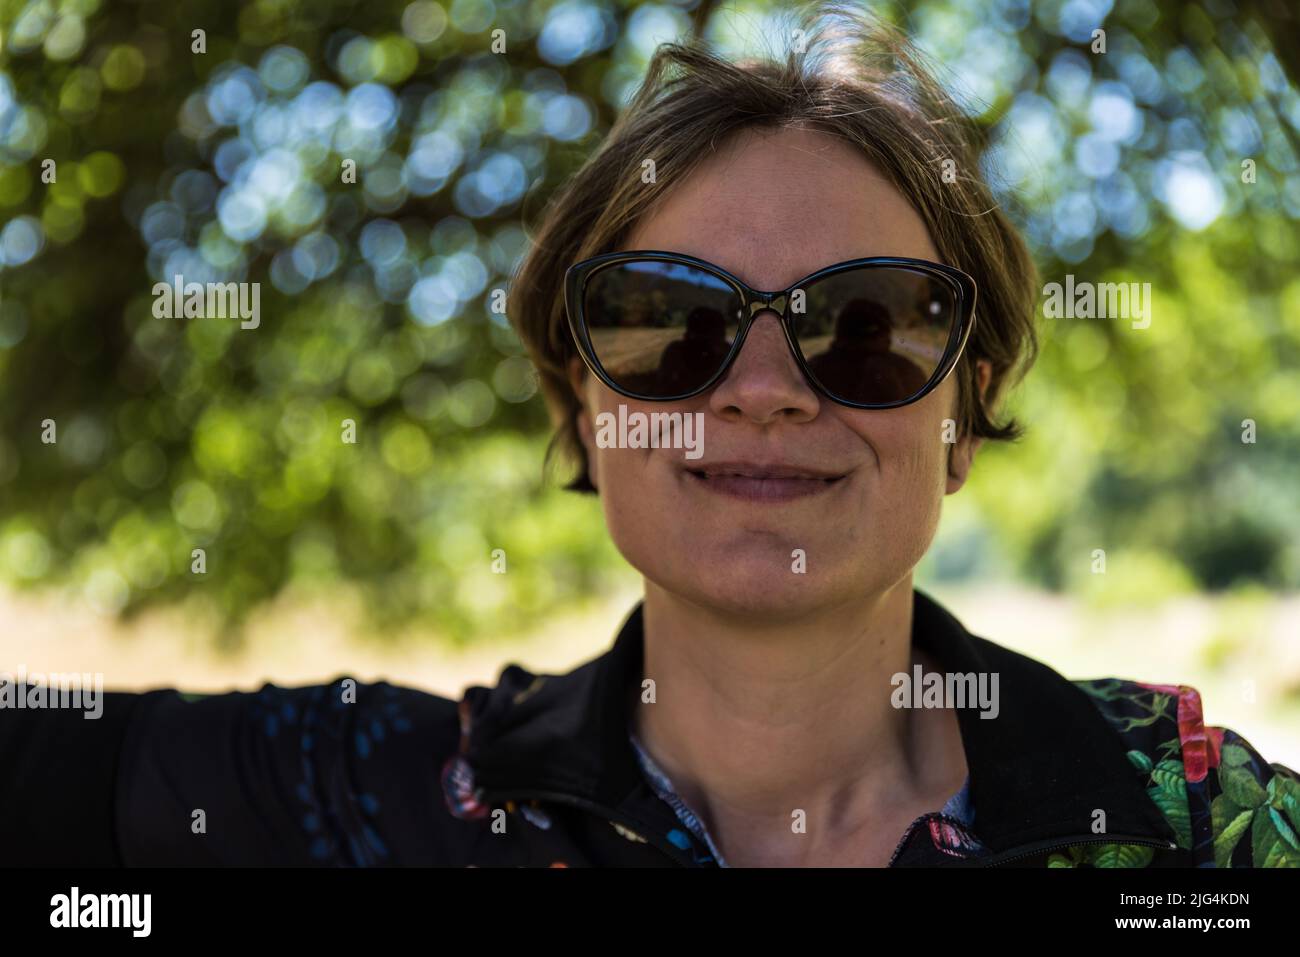 Immagine di una donna rilassante attraente all'ombra di un albero, Kordel, Germania Foto Stock